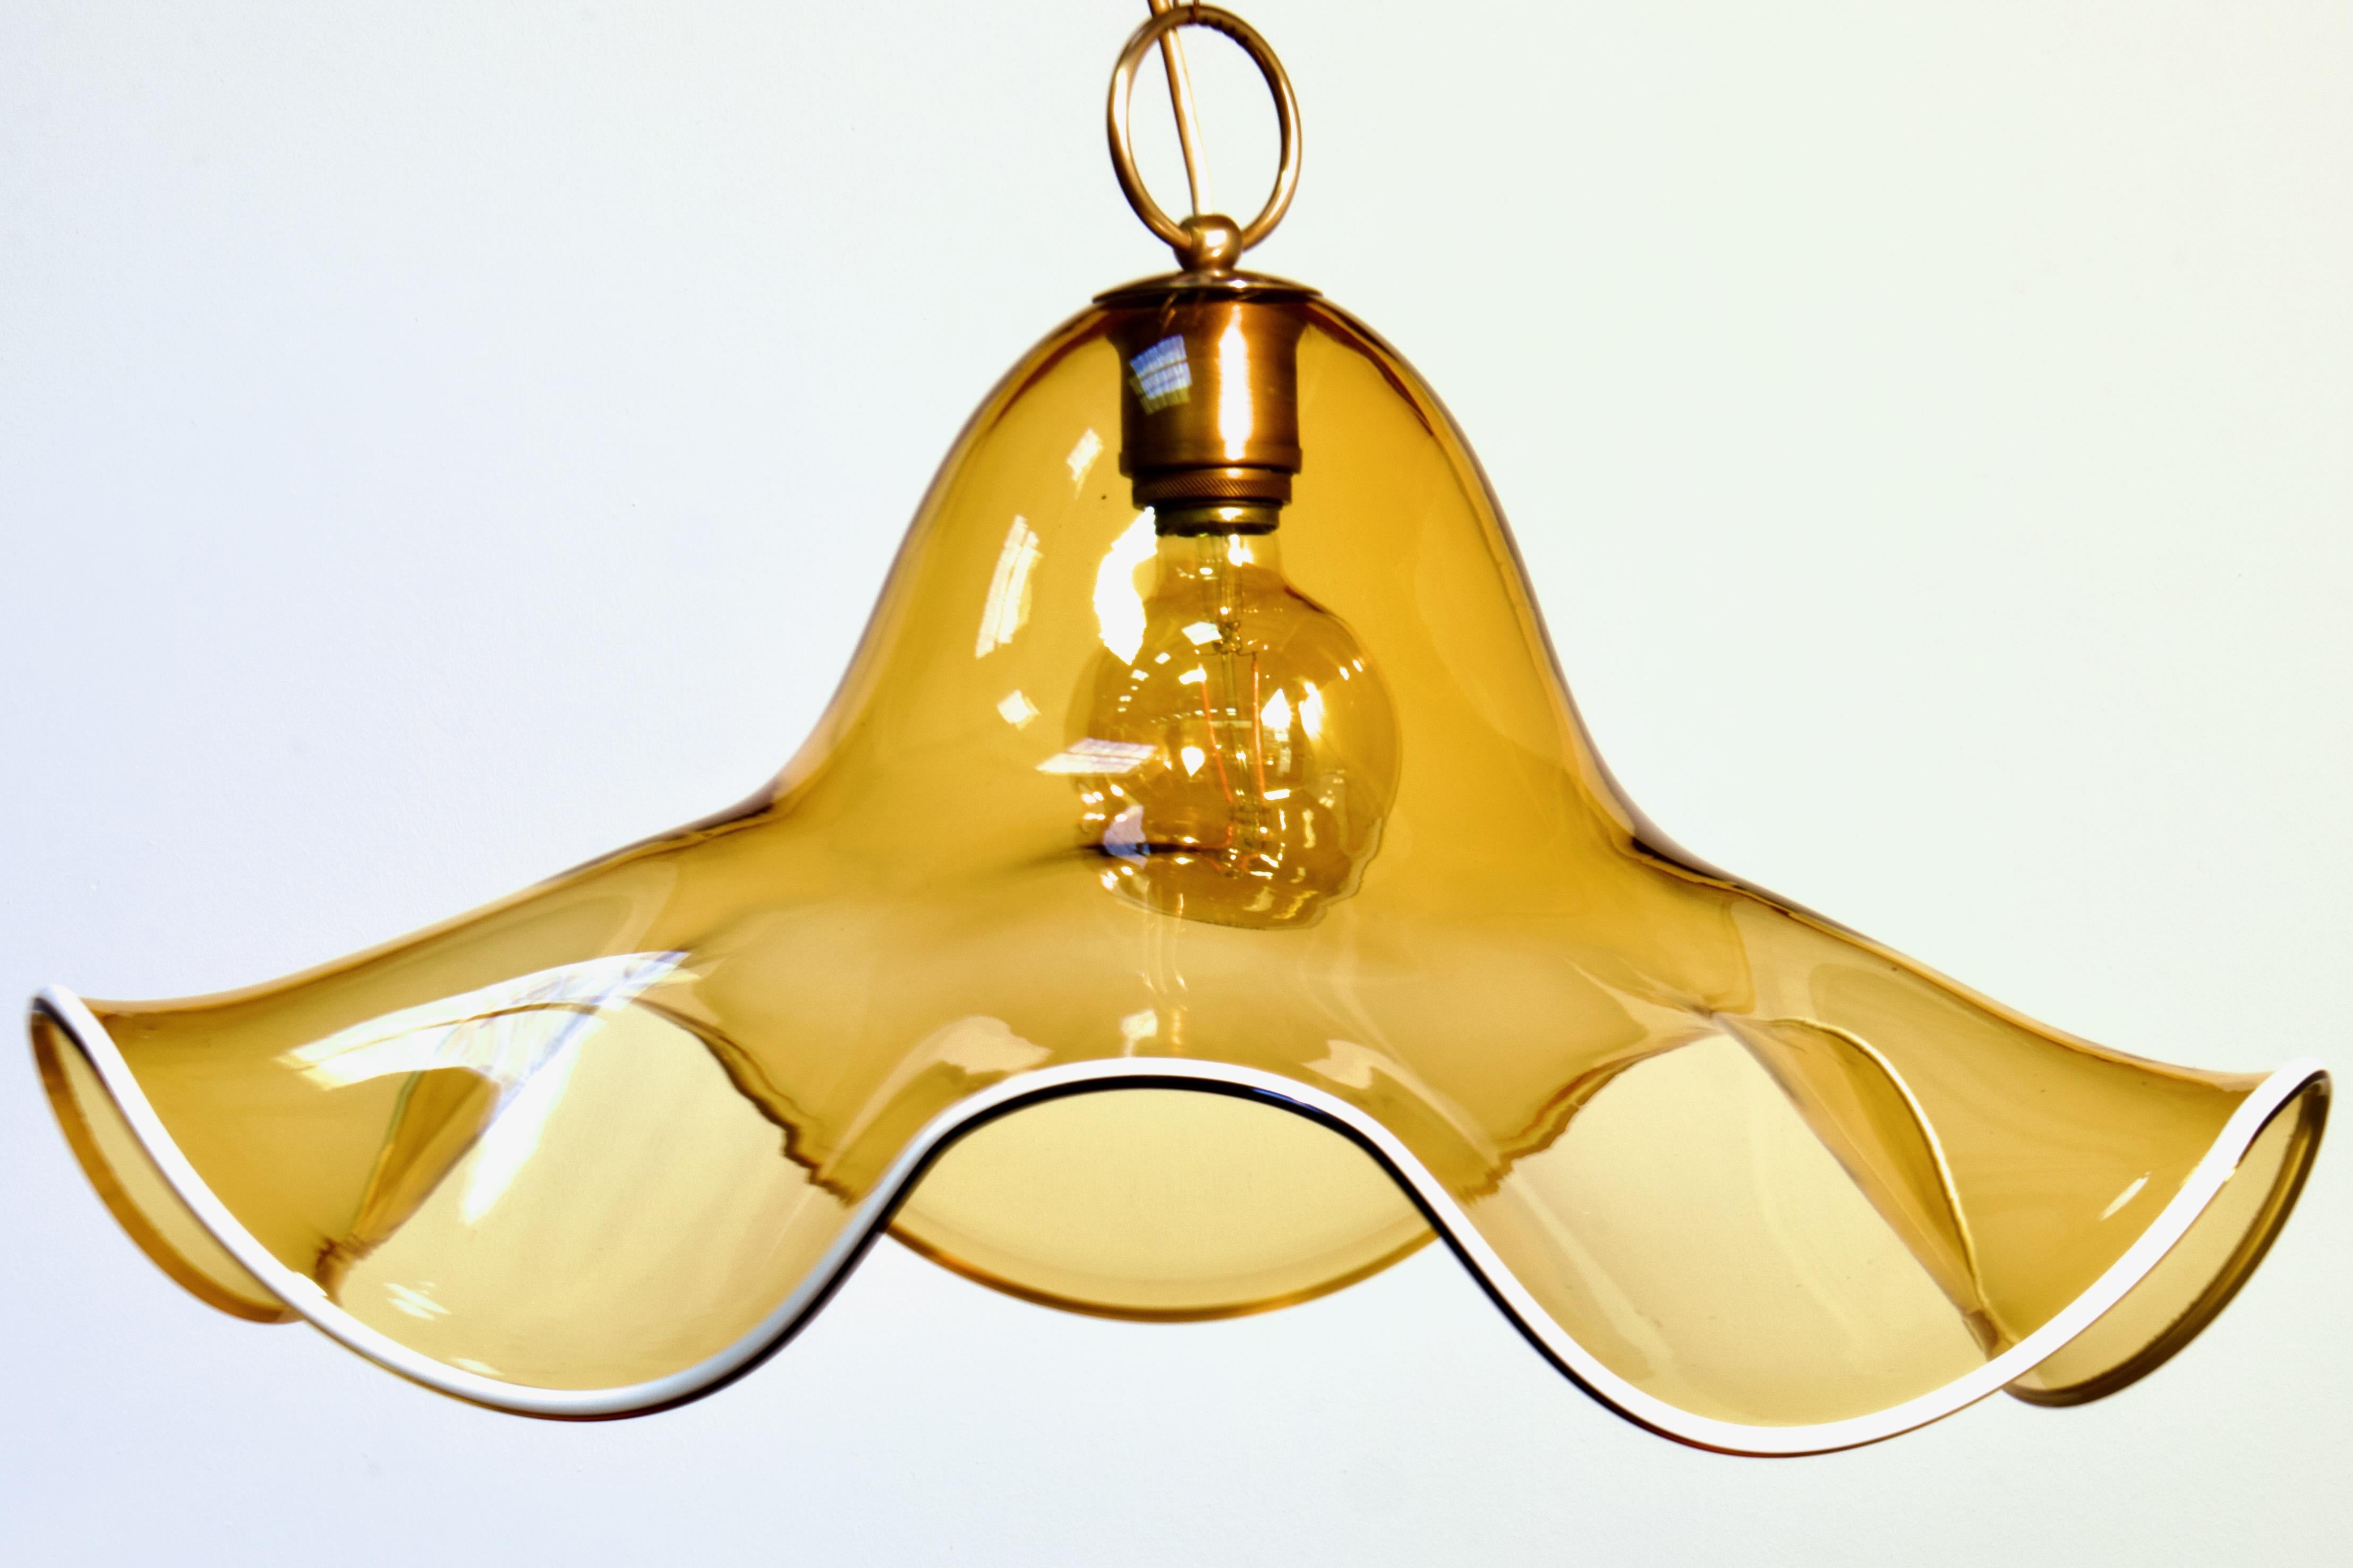 Grande (24,5 pouces de diamètre) lampe suspendue florale de La Murrina de Murano, datant des années 1970 et provenant du milieu du siècle. 

Formé à partir d'une grande feuille épaisse de verre transparent soufflé à la main, d'une magnifique teinte